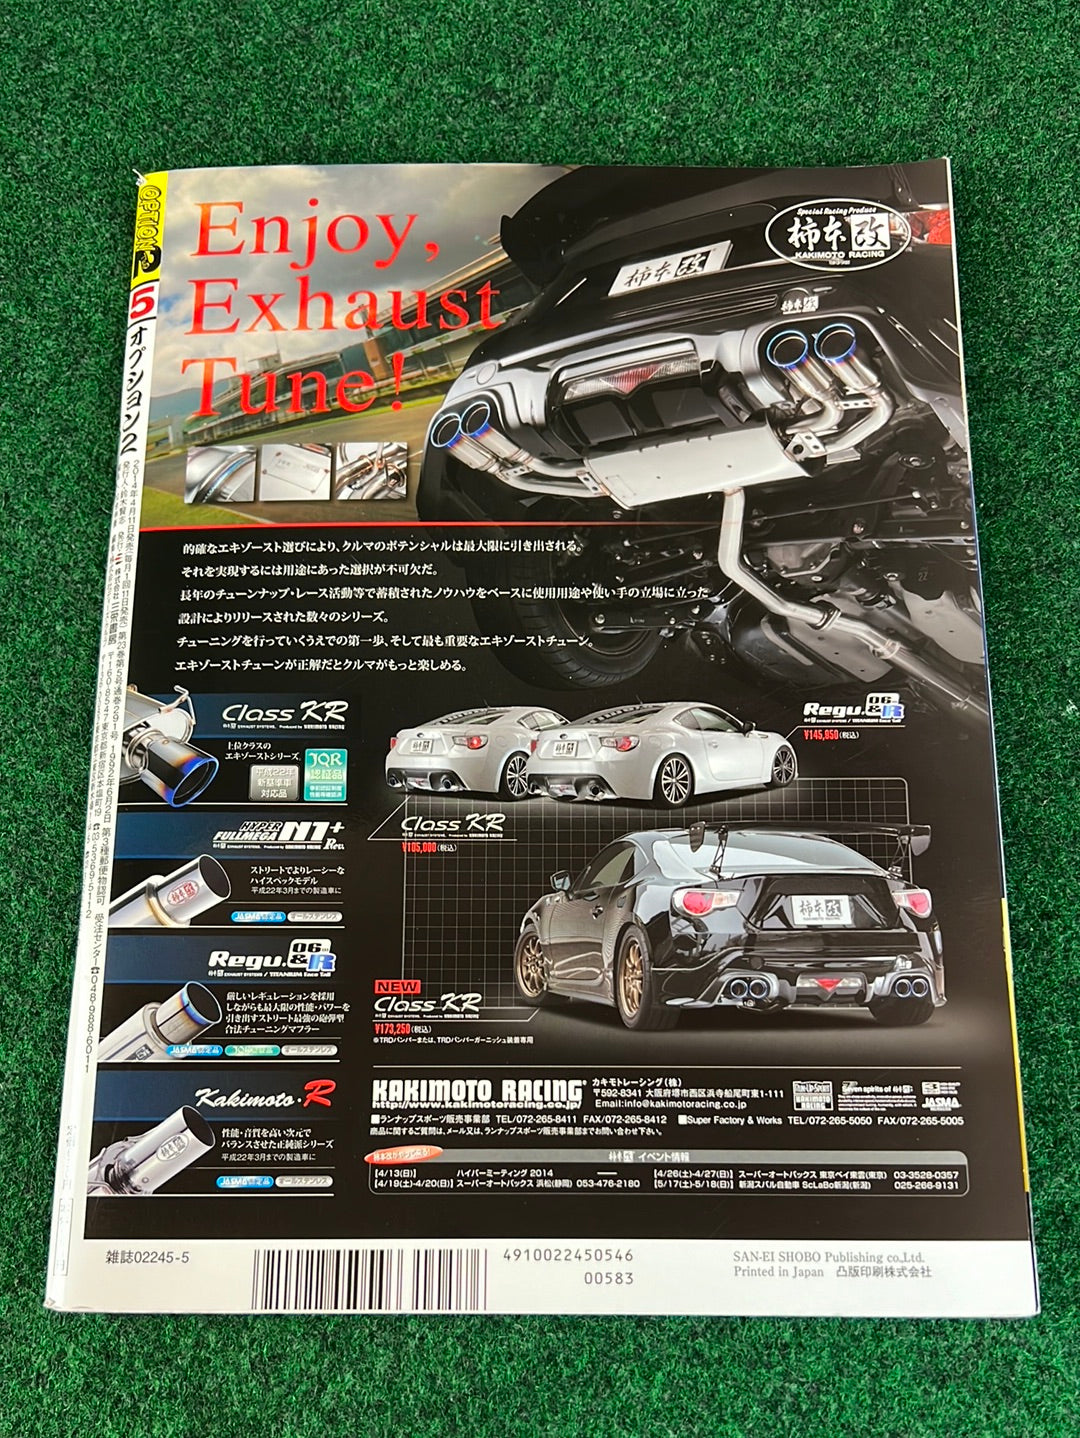 OPTION2 Magazine - May 2014